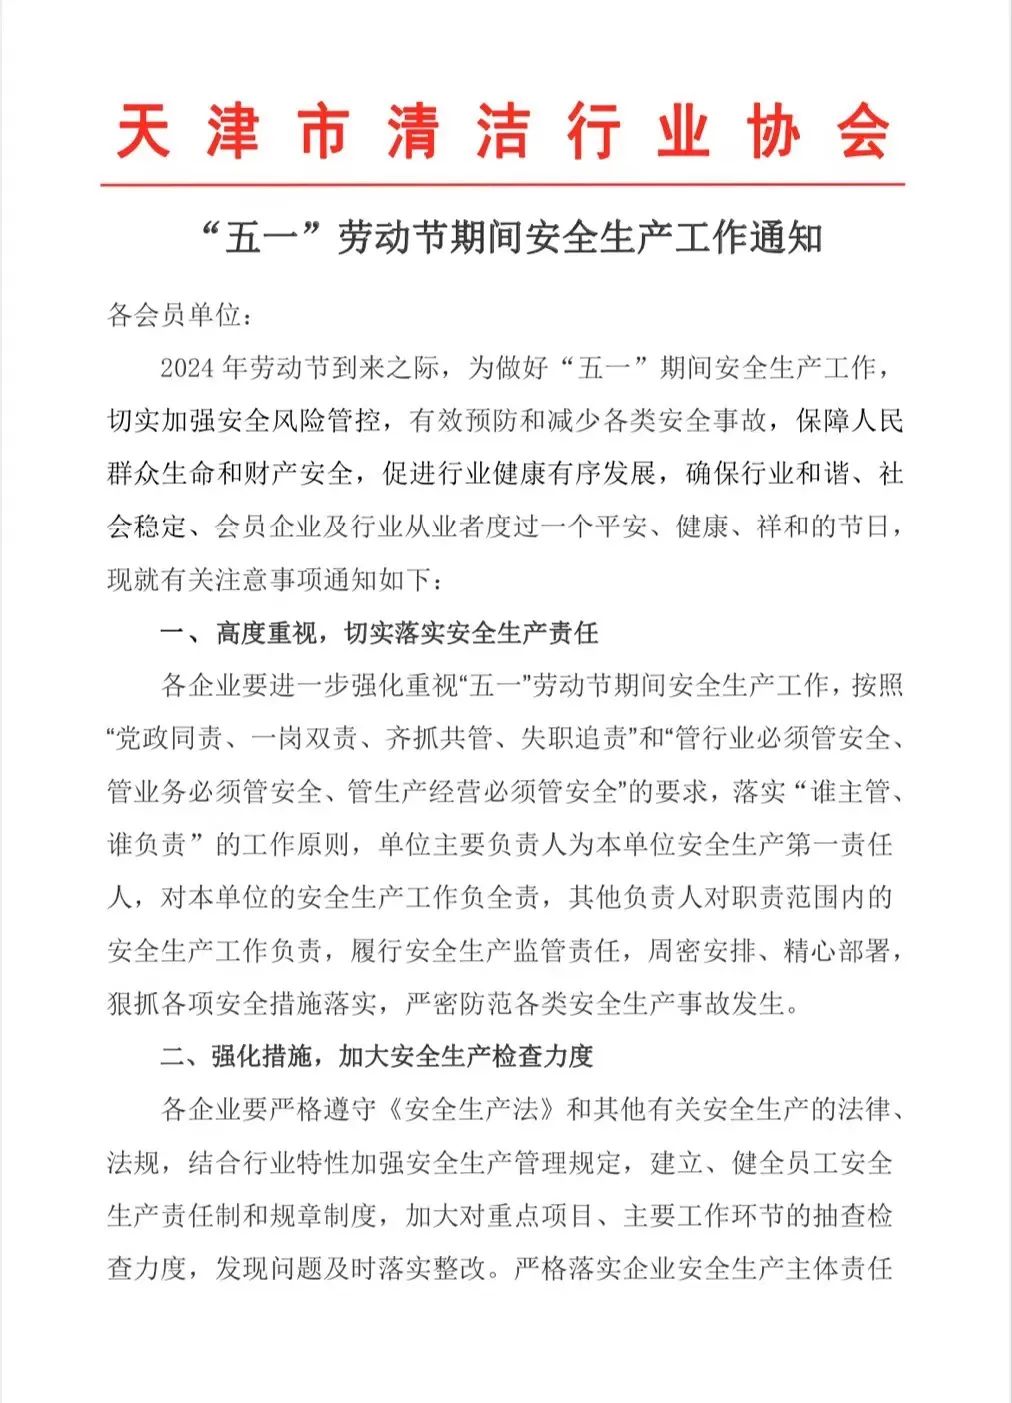 【重要通知】天津市清洁行业协会安全生产工作通知